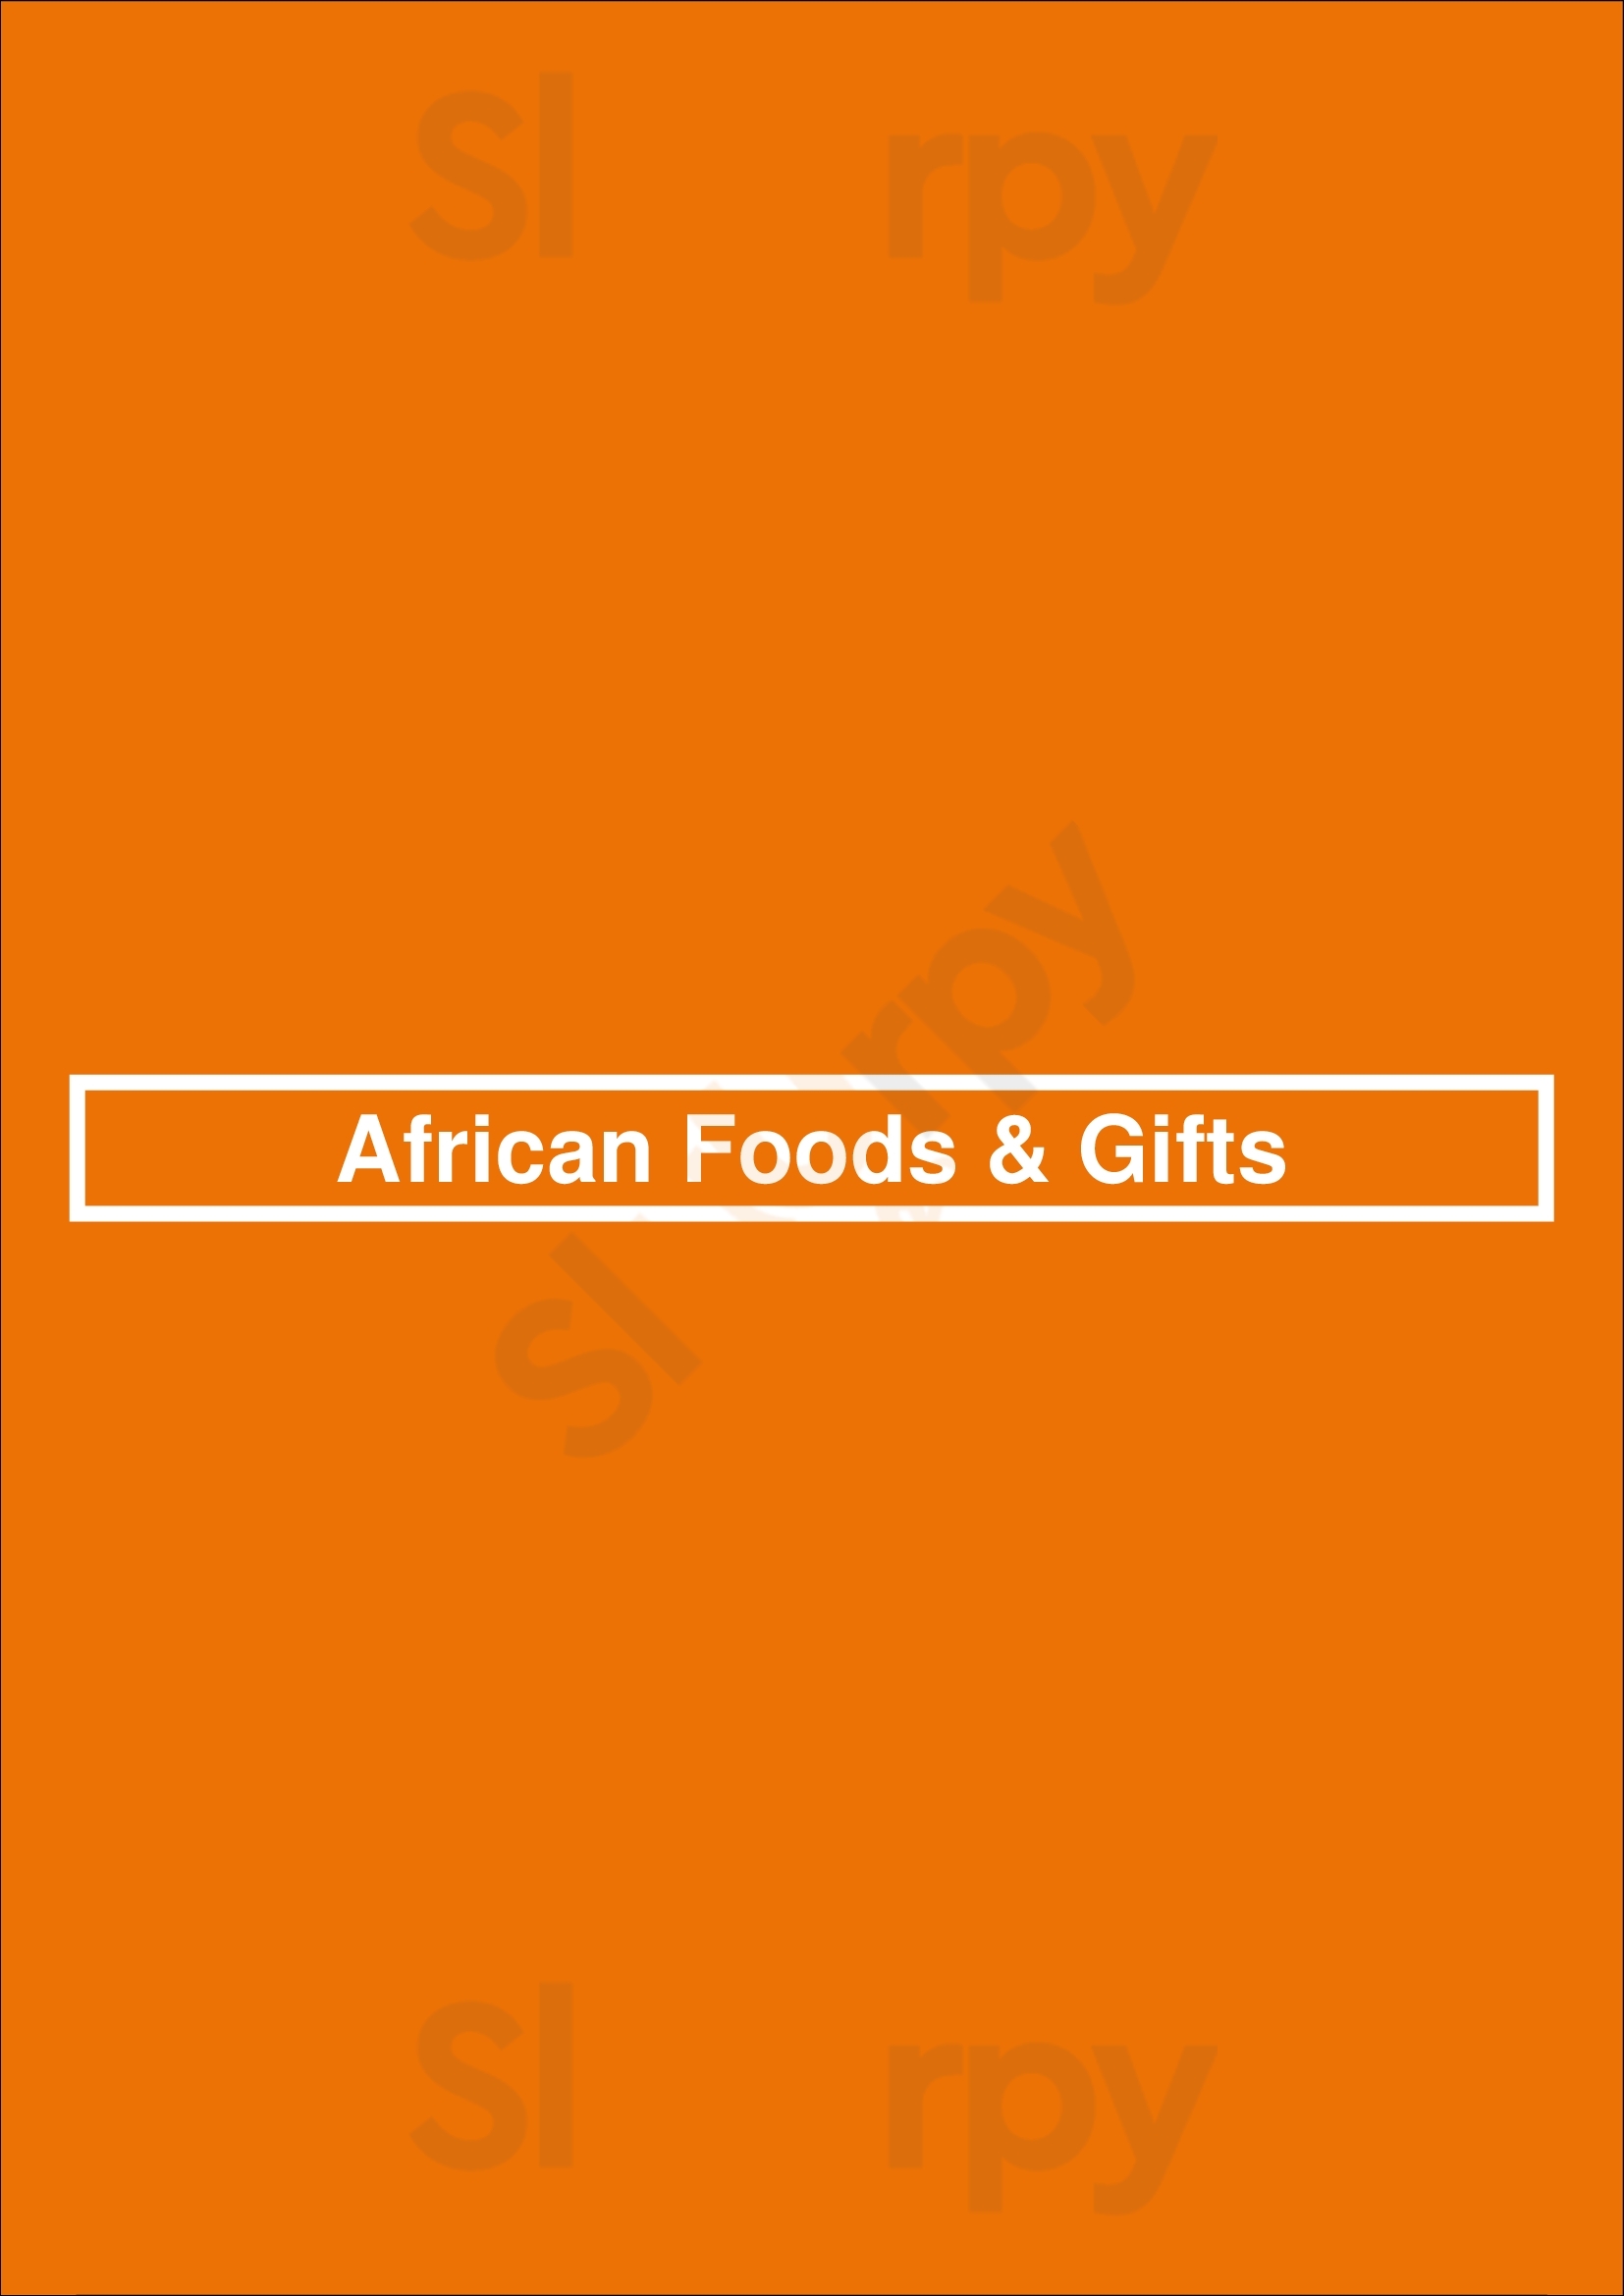 African Foods & Gifts Minneapolis Menu - 1